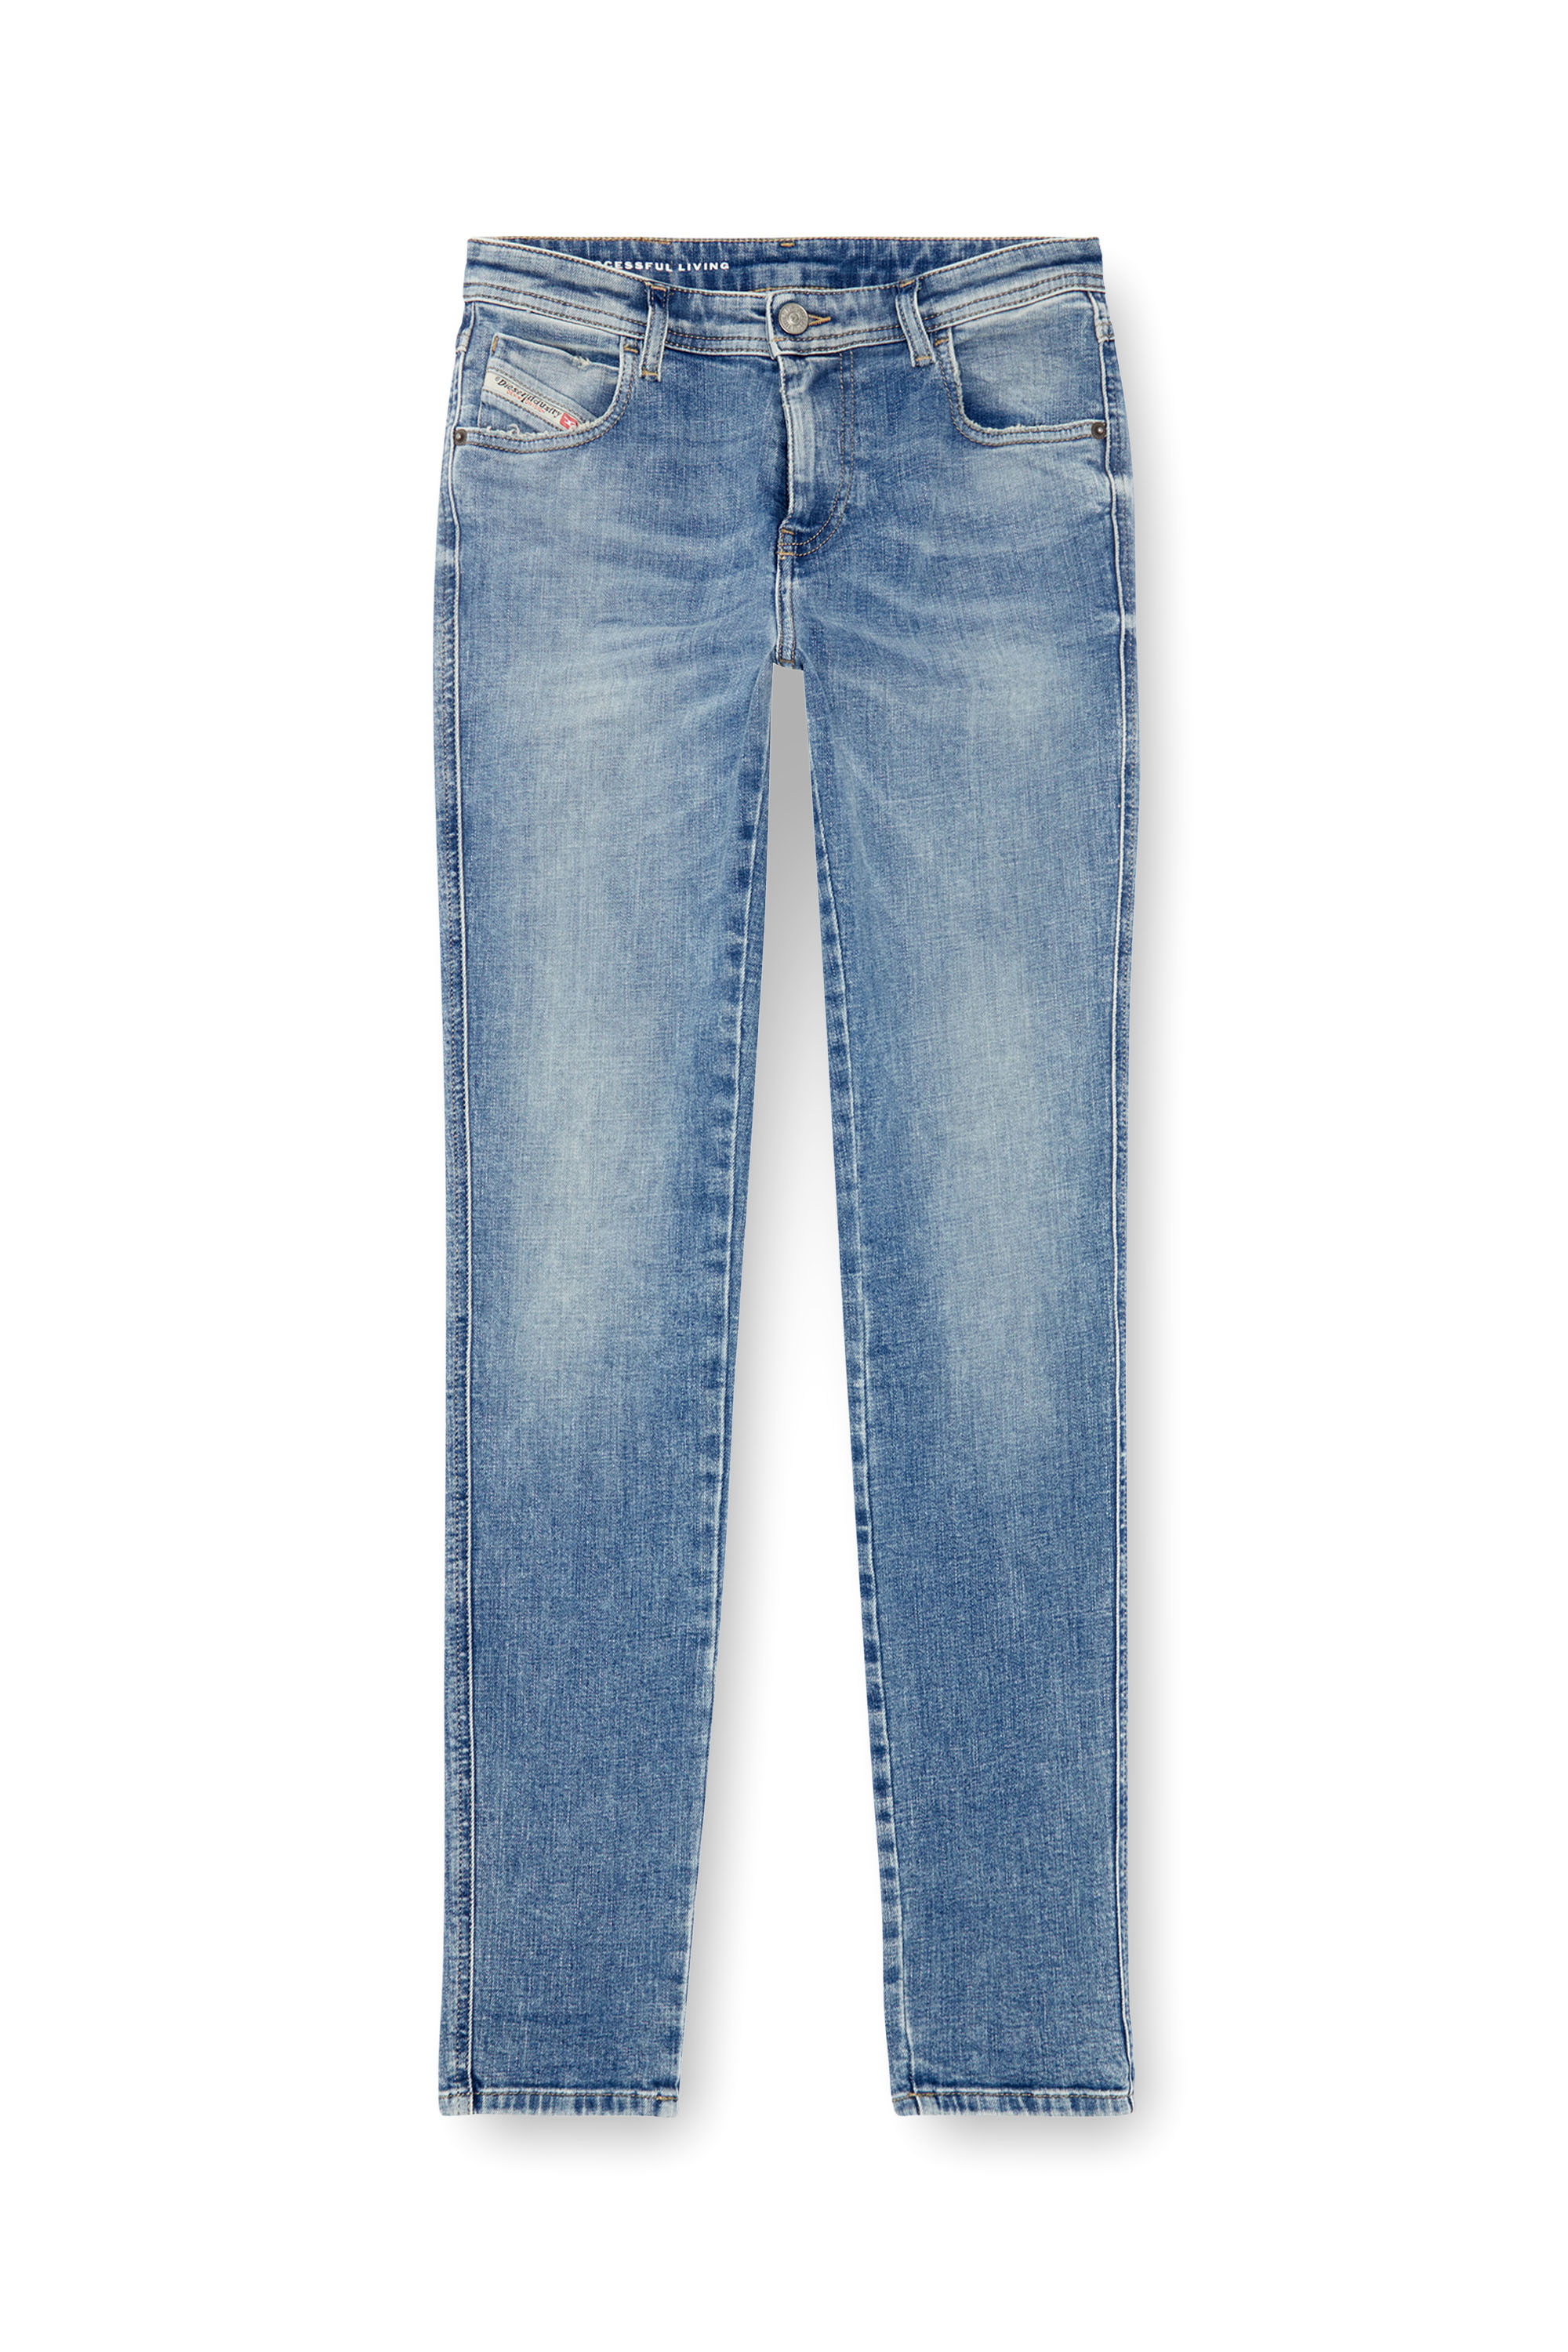 Diesel - Skinny Jeans 2015 Babhila 09J21, Mujer Skinny Jeans - 2015 Babhila in Azul marino - Image 3